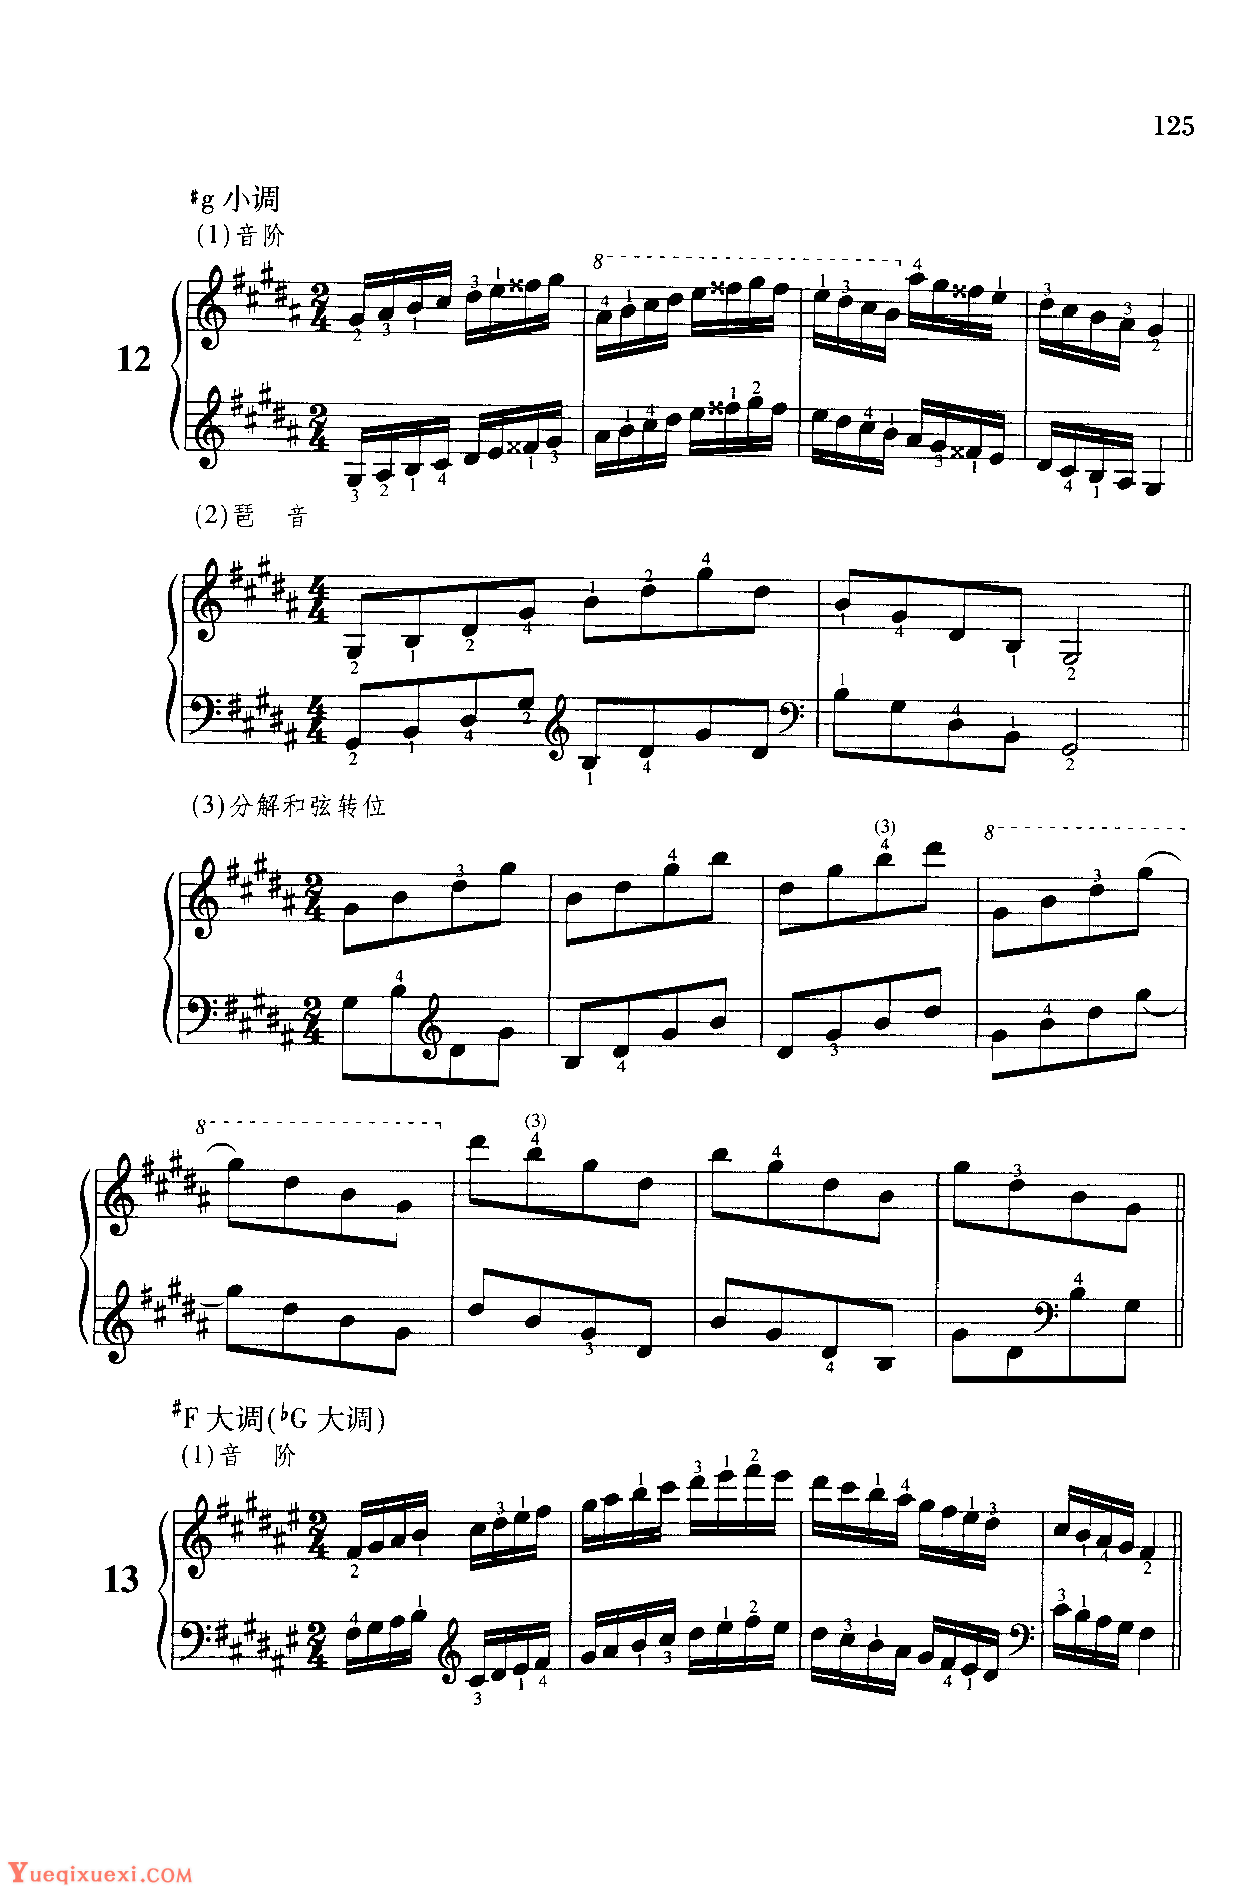 儿童钢琴手指练习谱【音阶、琶音、分解和弦转位（按关系大、小调归类排列）】